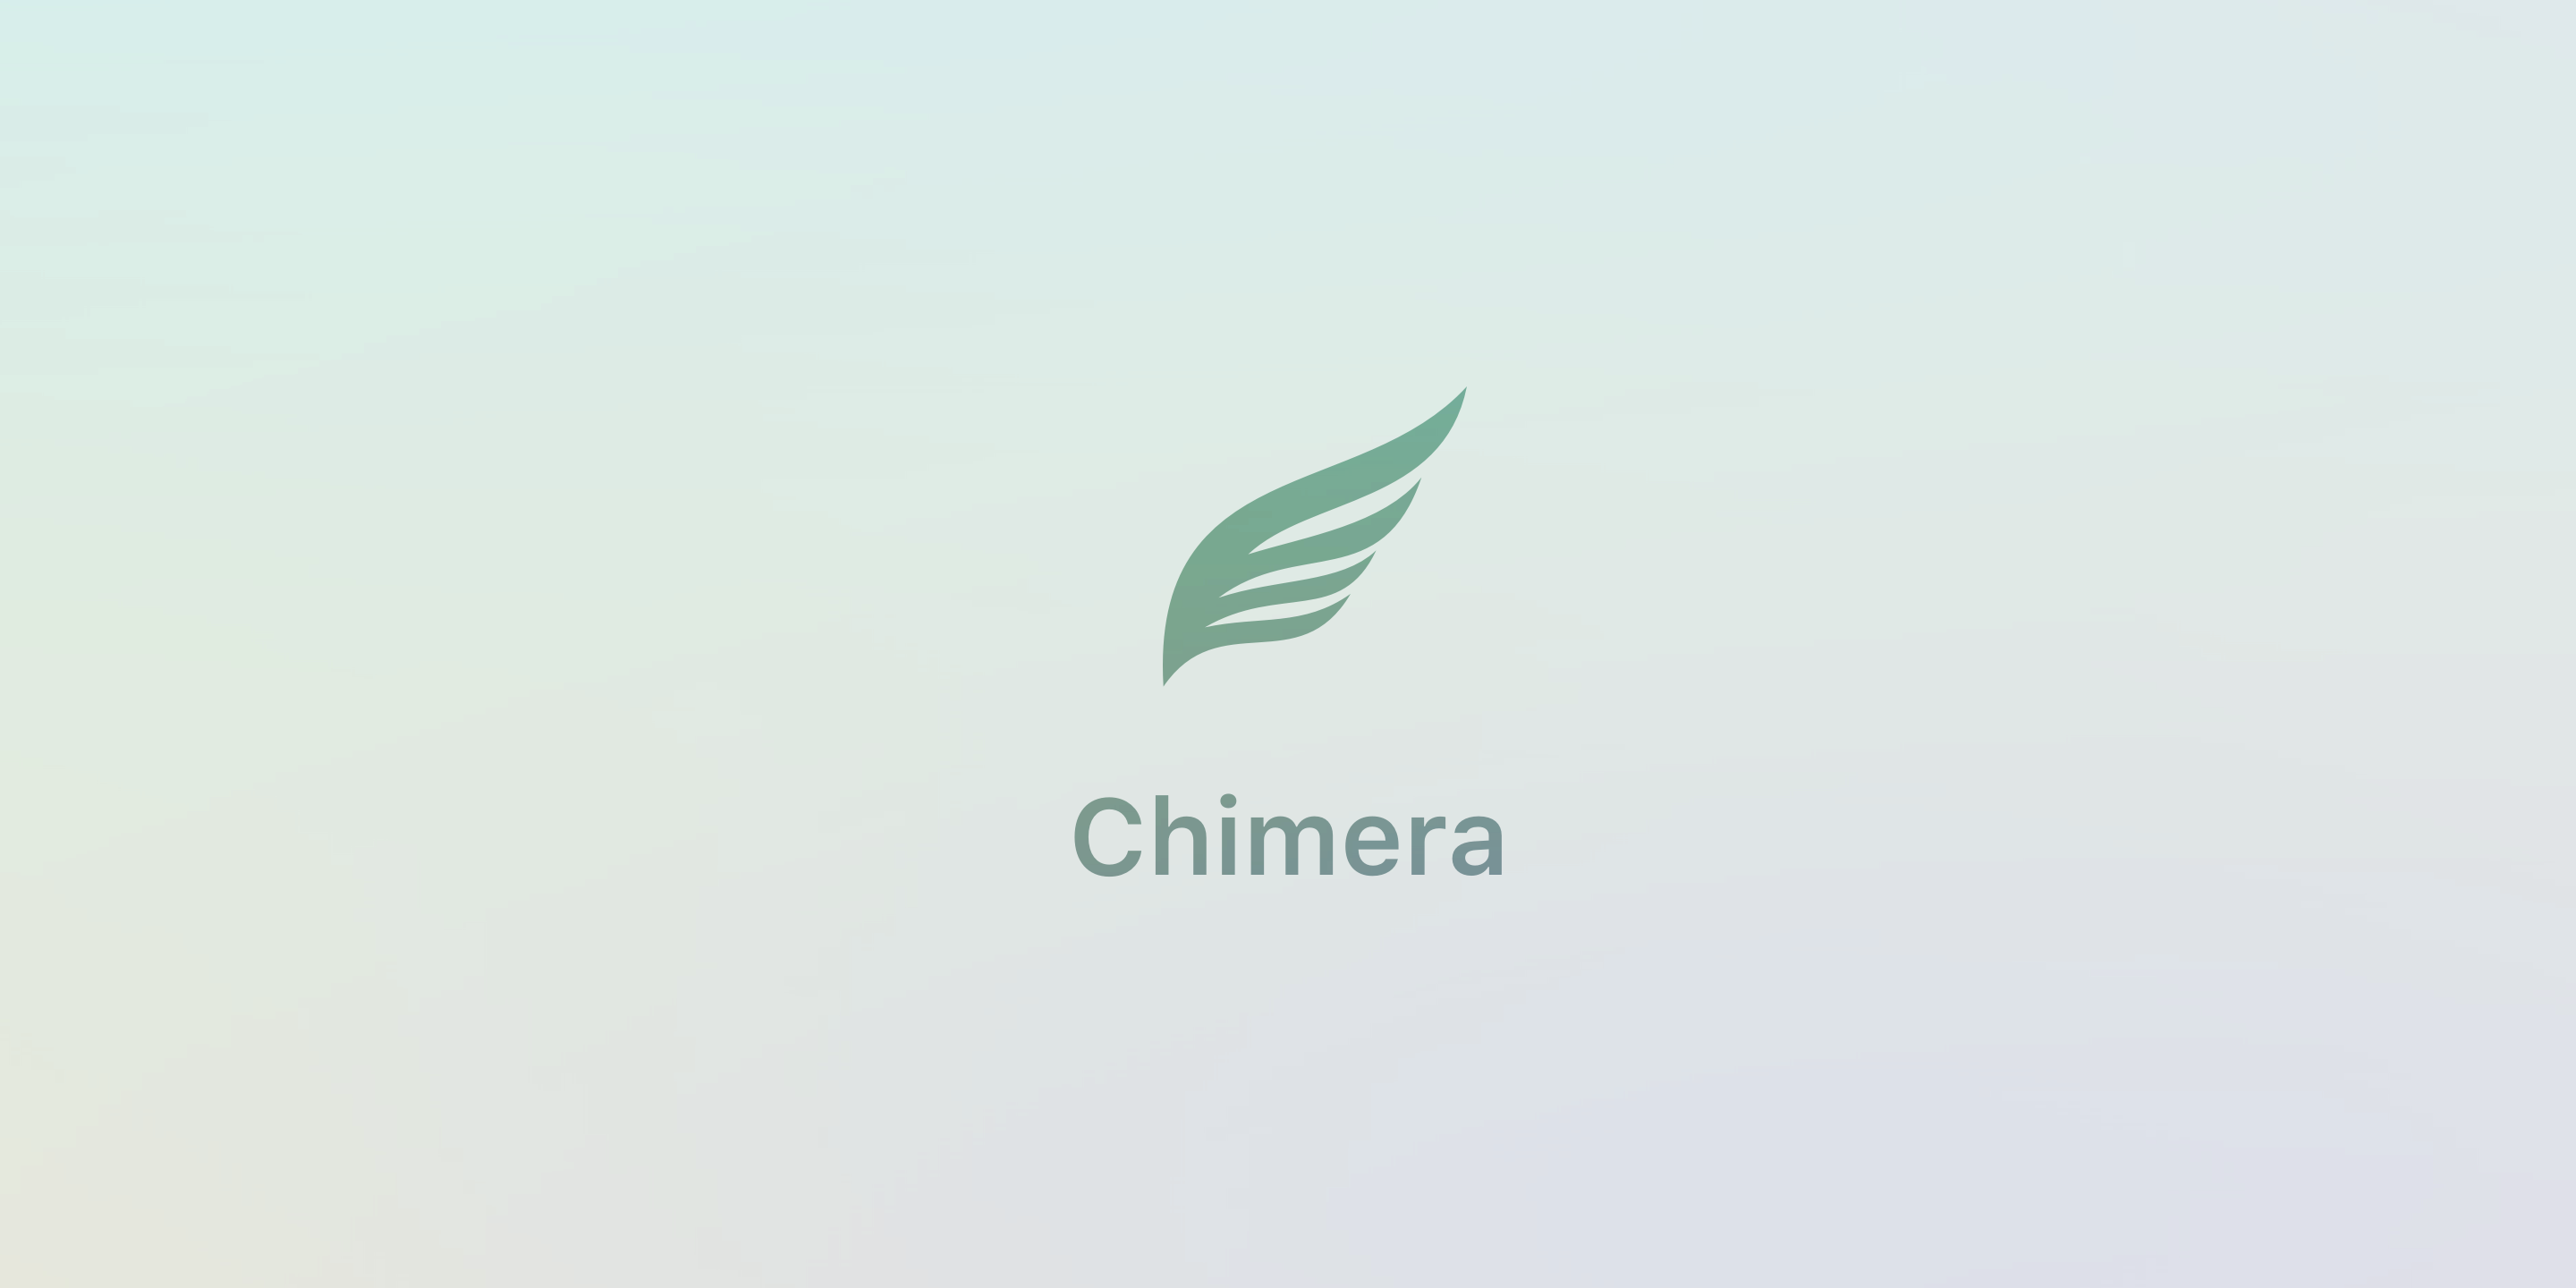 Chimera v1.3.6 выпущена с повышенной надежностью Sock Puppet, исправлены ошибки